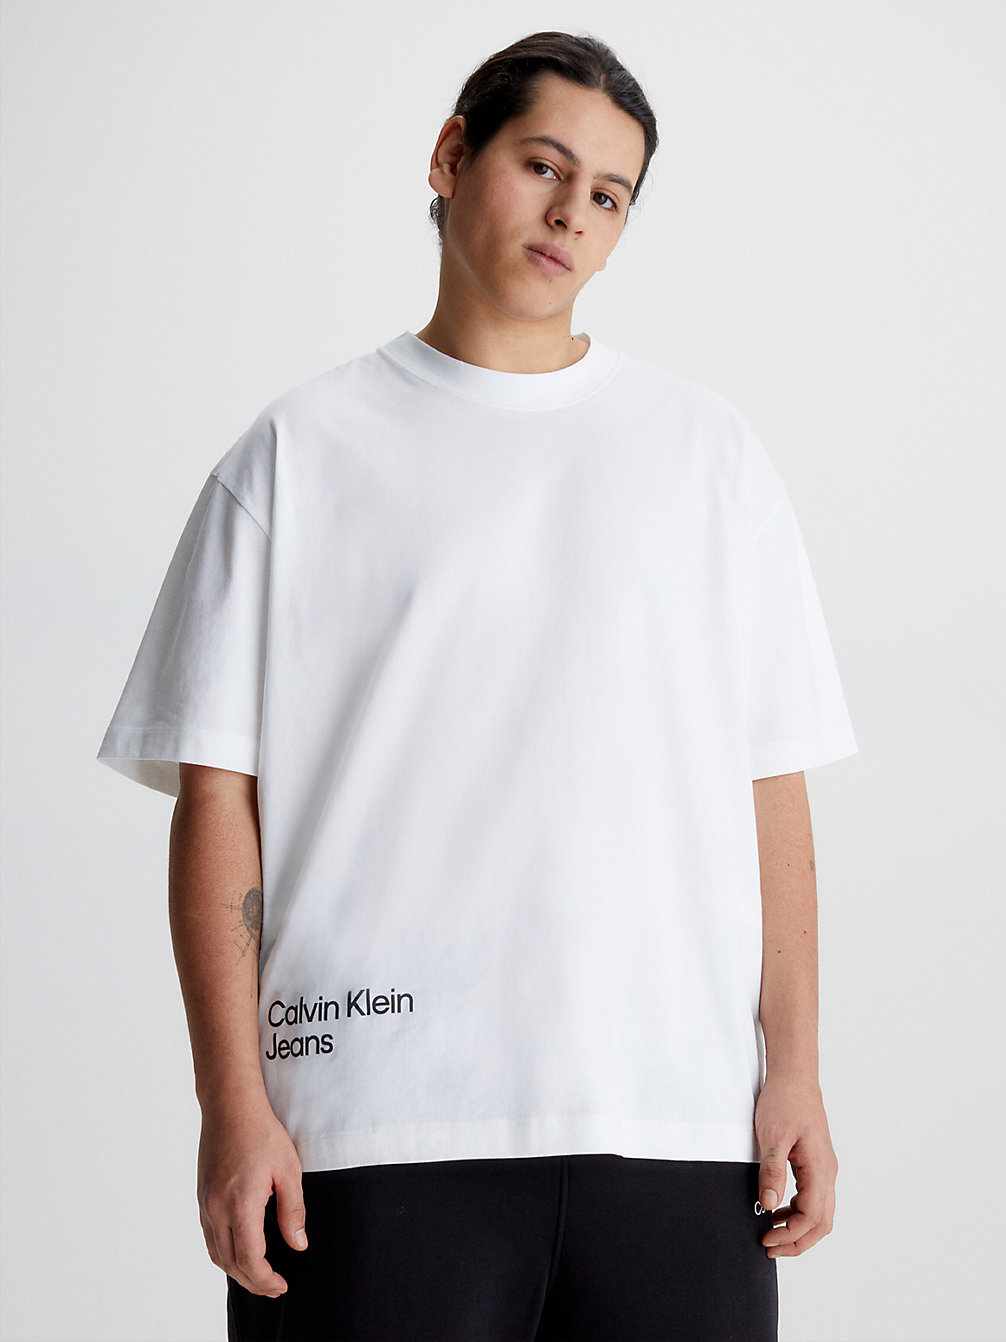 BRIGHT WHITE > T-Shirt In Großen Größen Mit Logo Hinten > undefined Herren - Calvin Klein